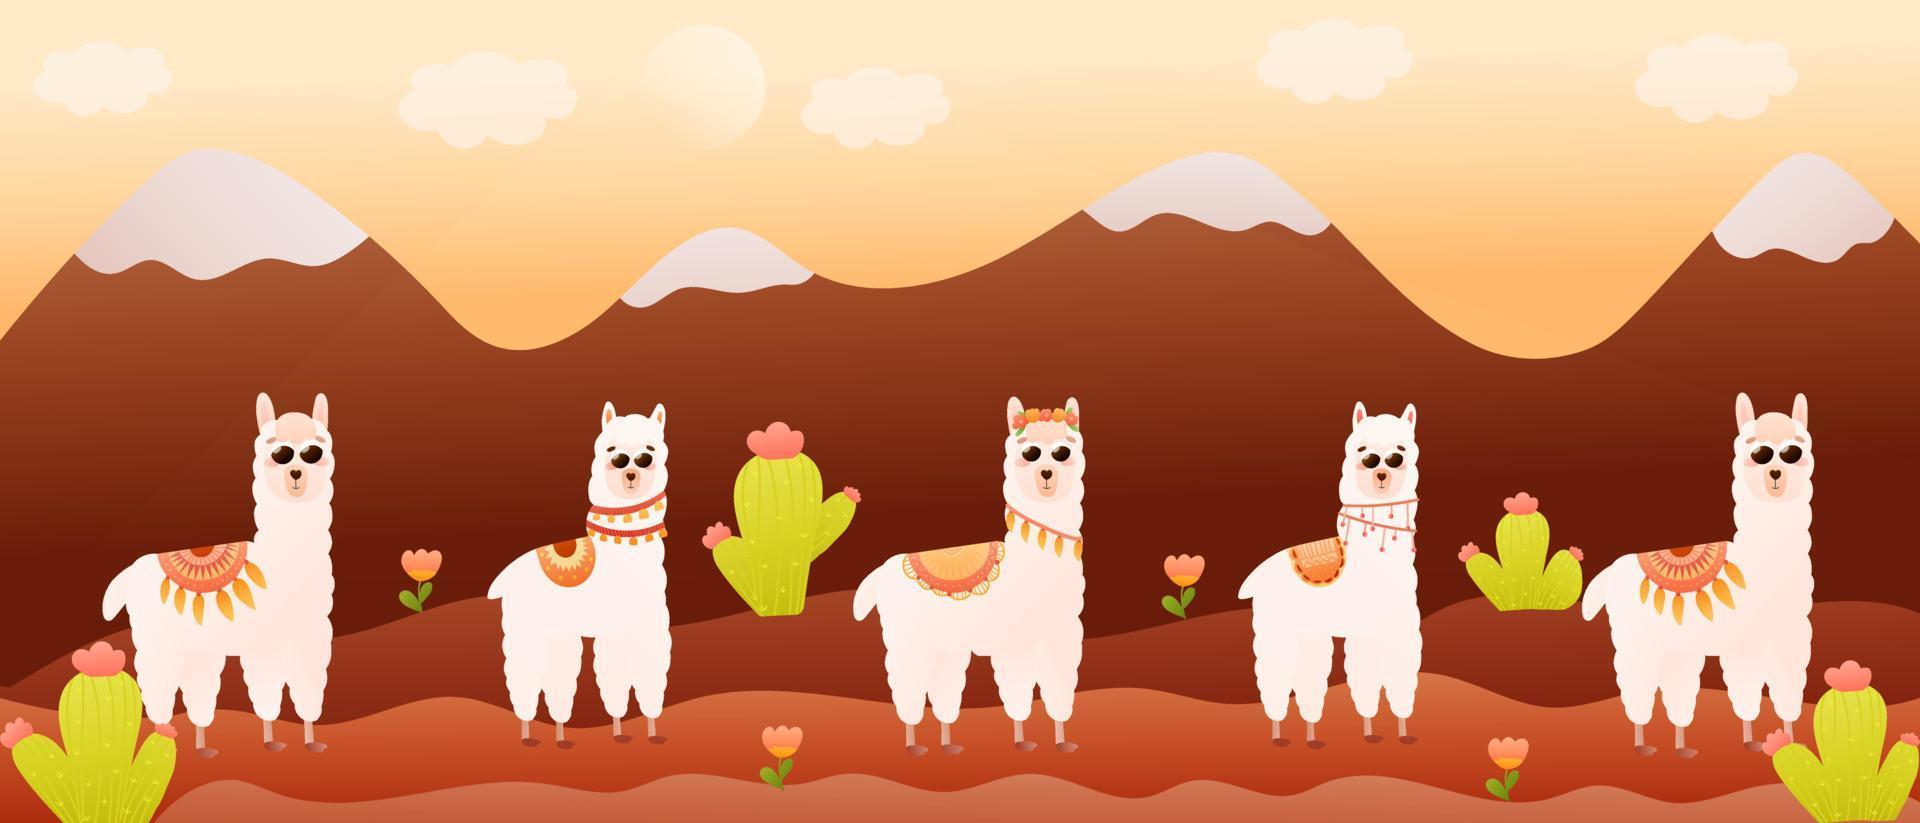 paisaje montañoso colorido con lindos personajes de llamas y cactus, pancarta para viajar, naturaleza salvaje vector